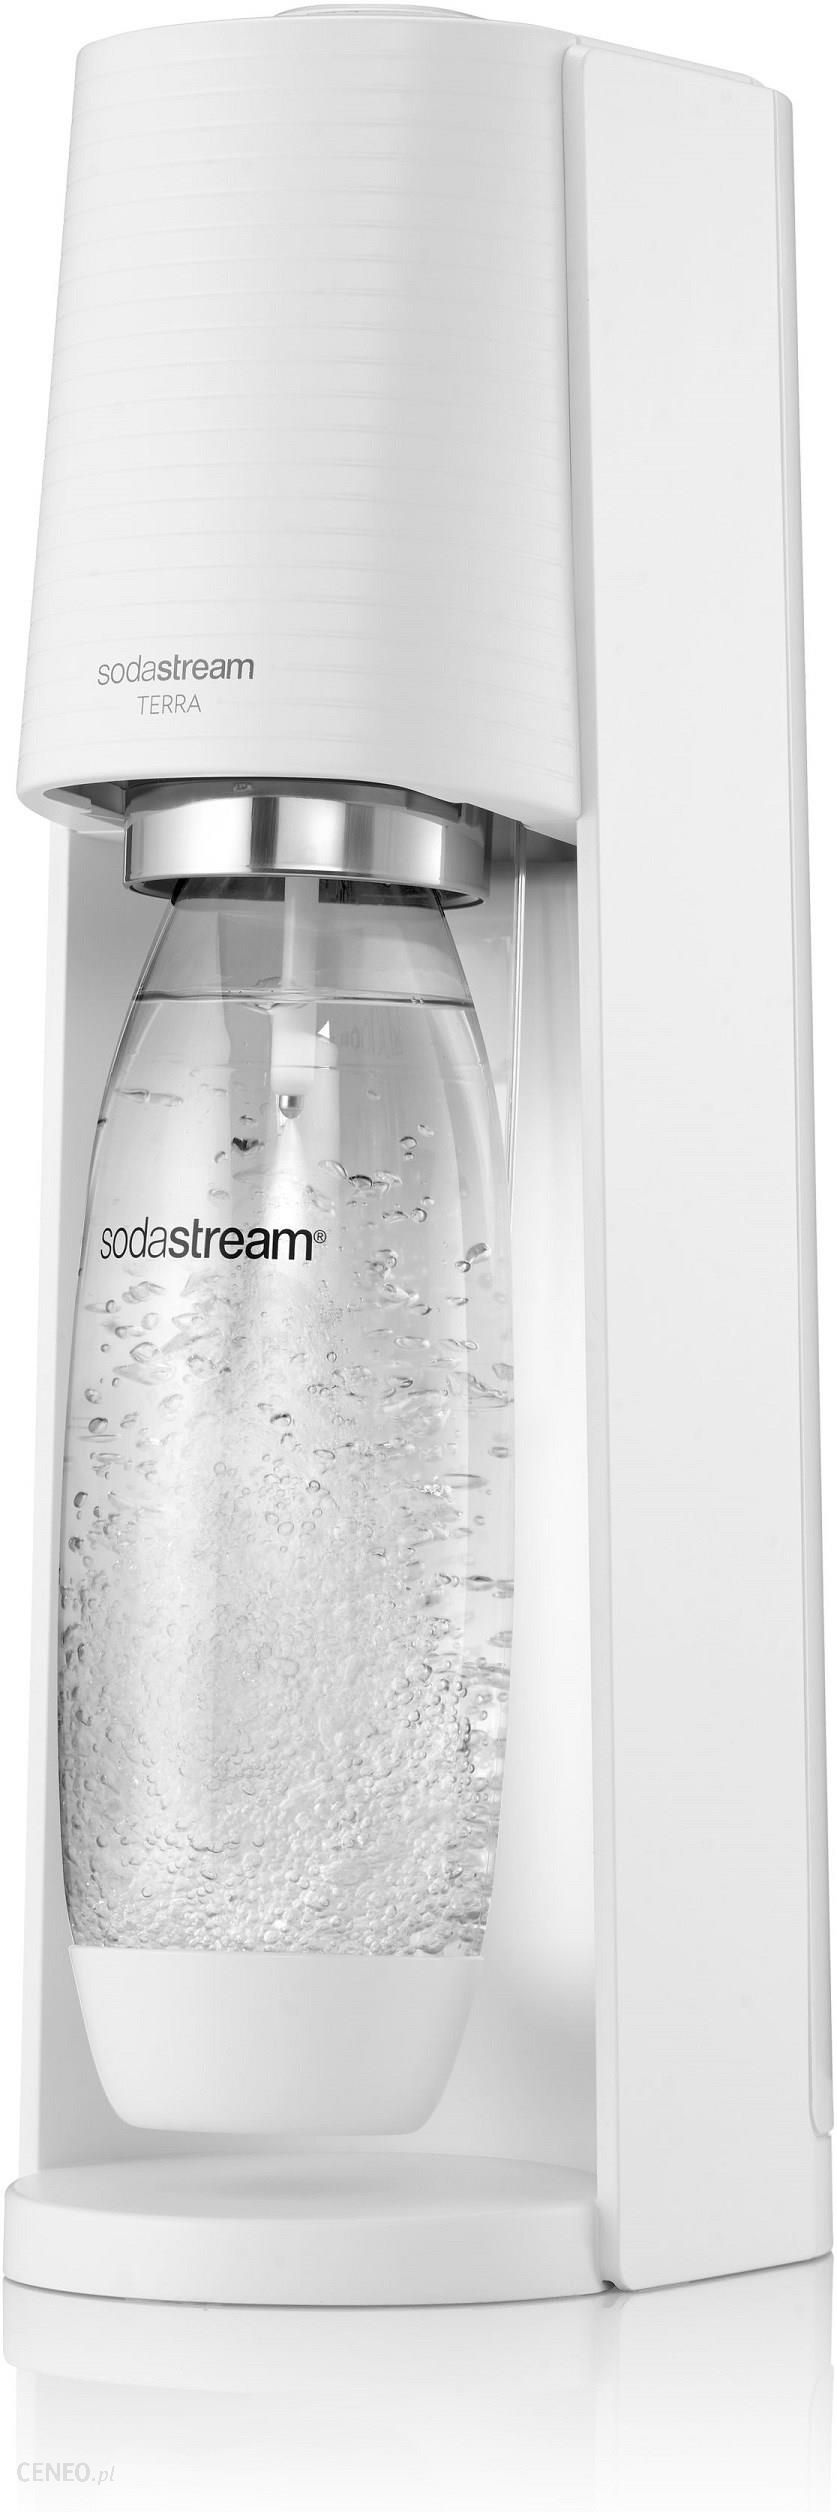 SodaStream Terra Biały